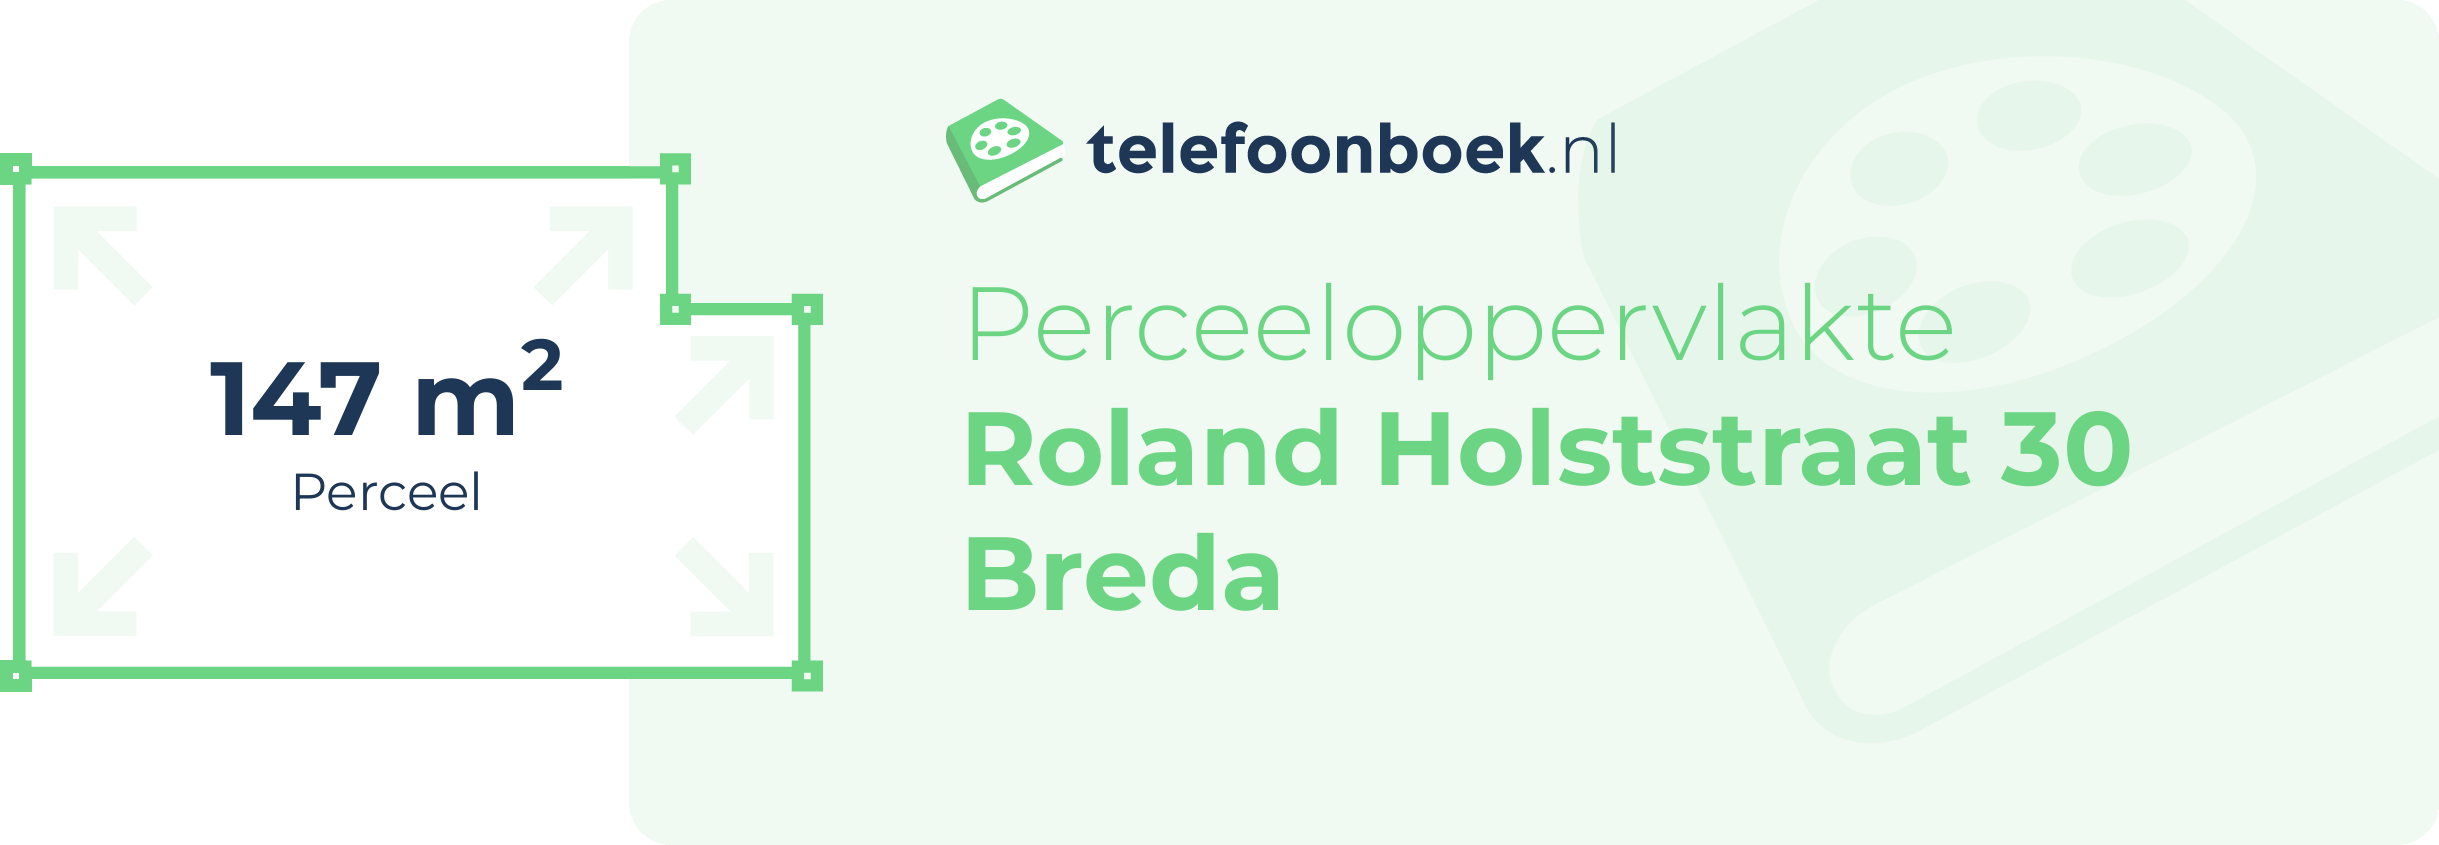 Perceeloppervlakte Roland Holststraat 30 Breda